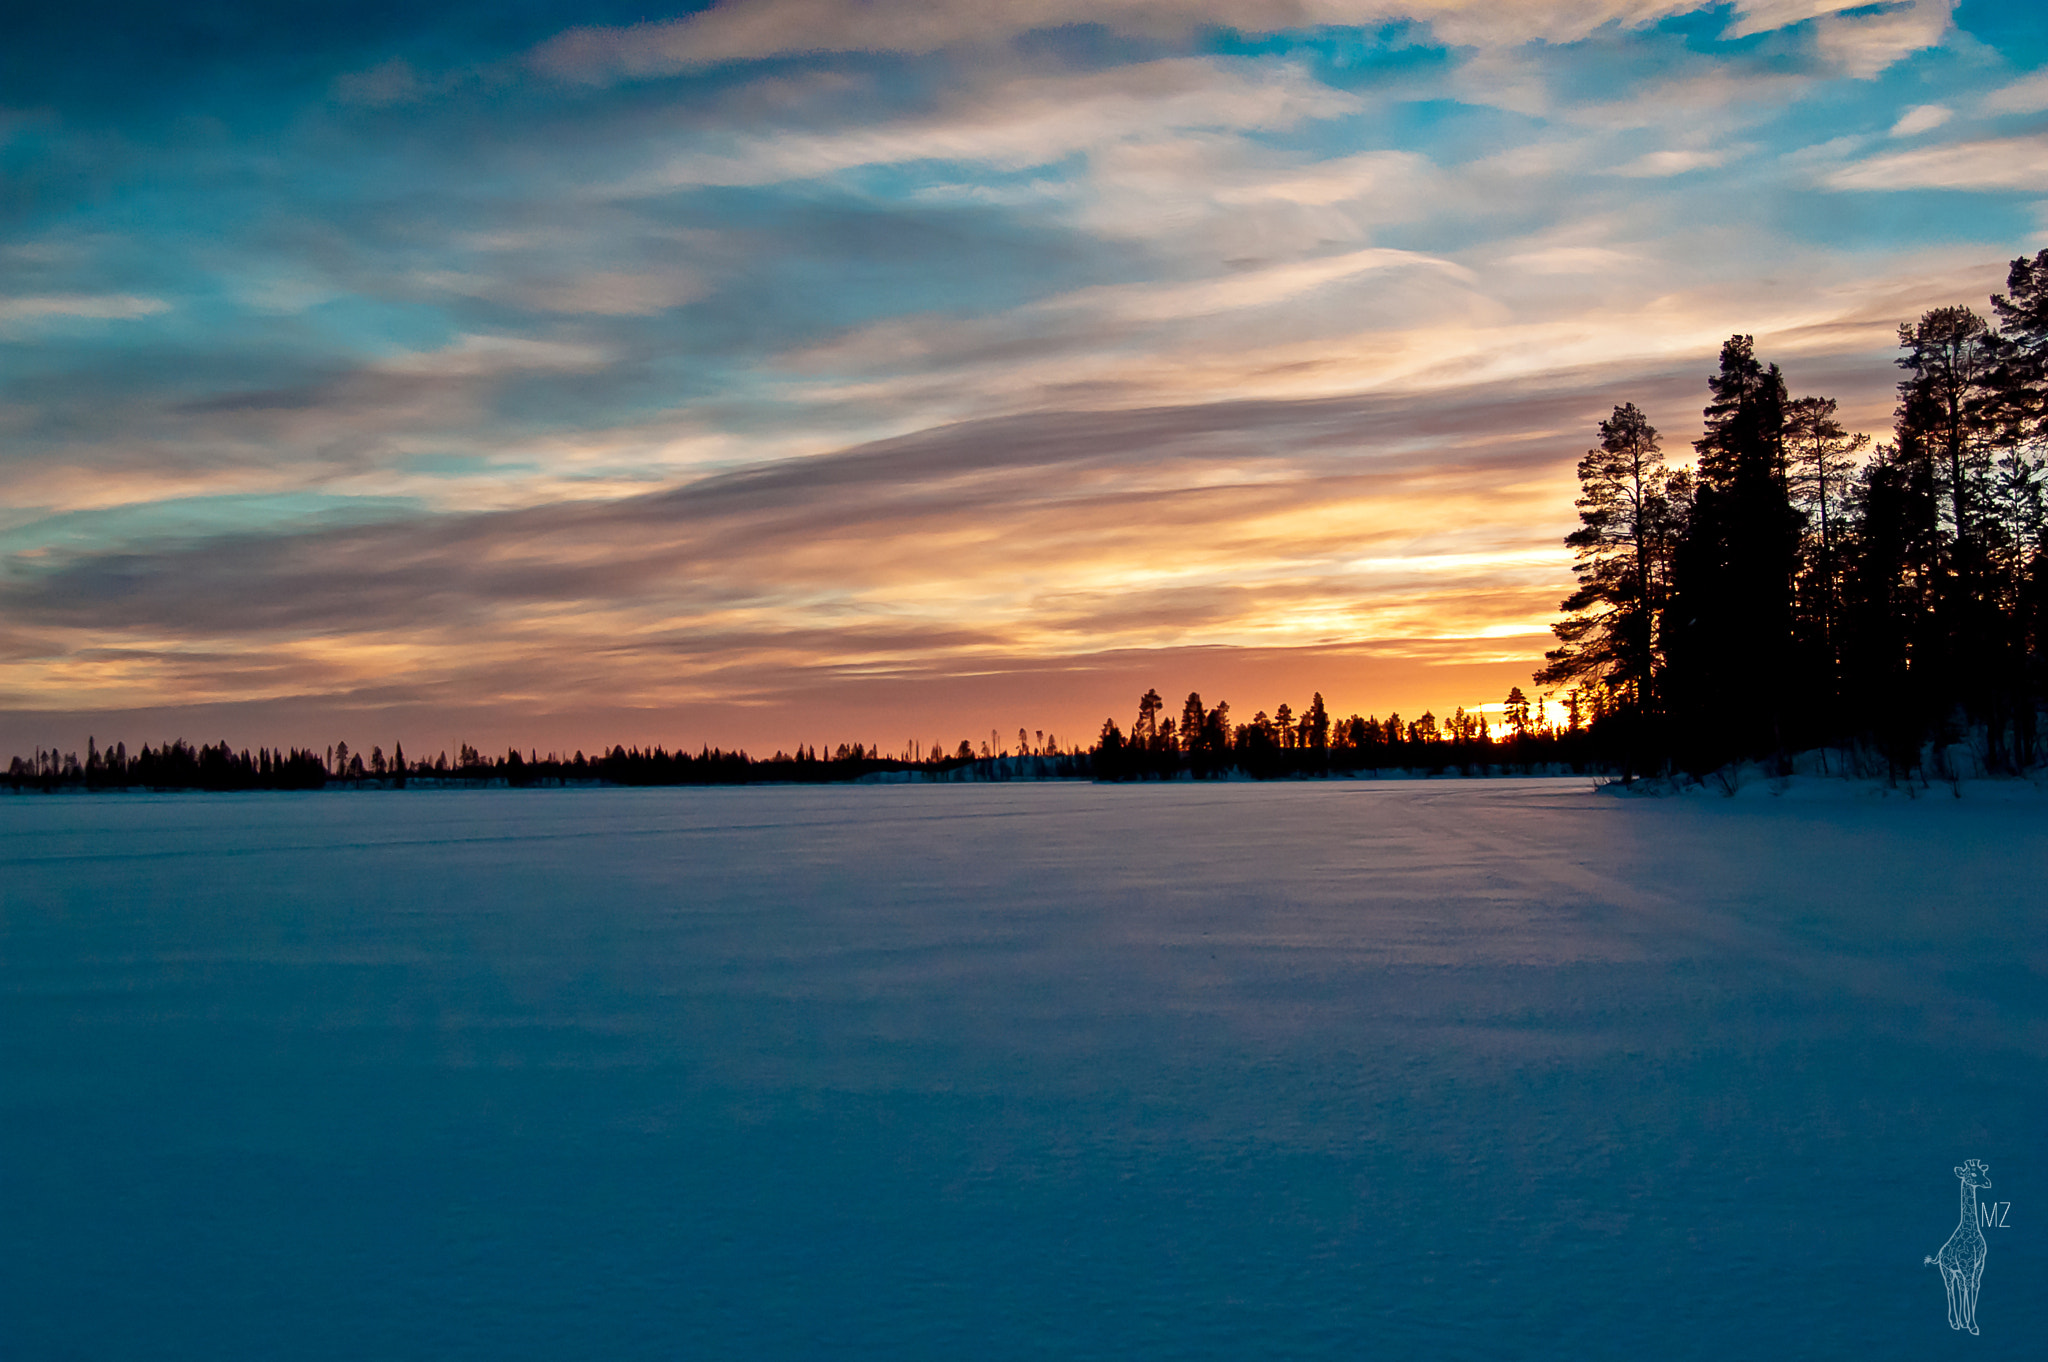 Nikon D70s + AF Zoom-Nikkor 28-80mm f/3.5-5.6D sample photo. Frozen sunset photography